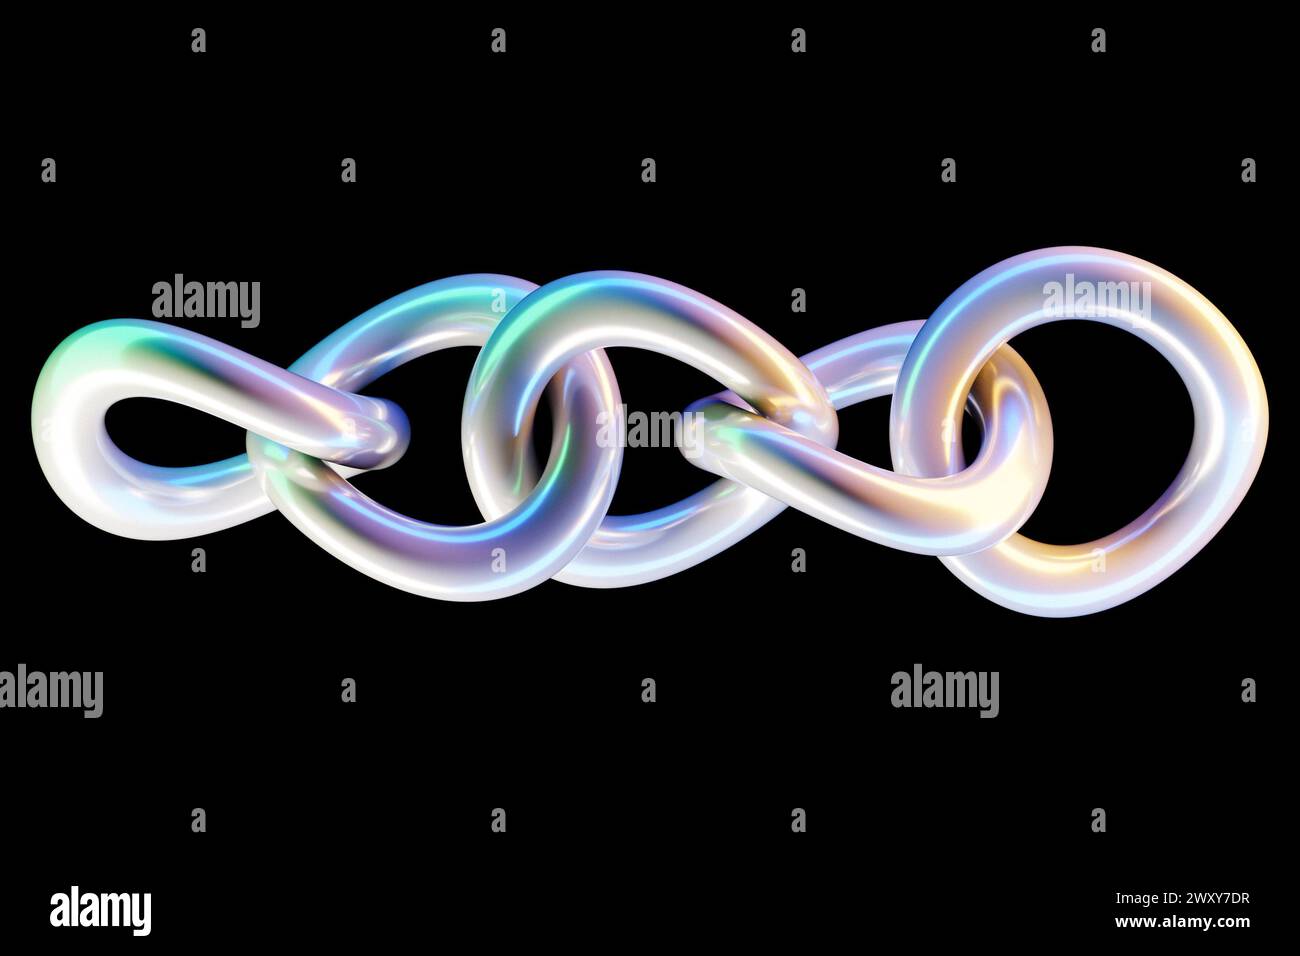 ilustración 3d de cadenas coloridas sobre un fondo negro. Patrón geométrico. Tecnología de fondo de geometría Foto de stock